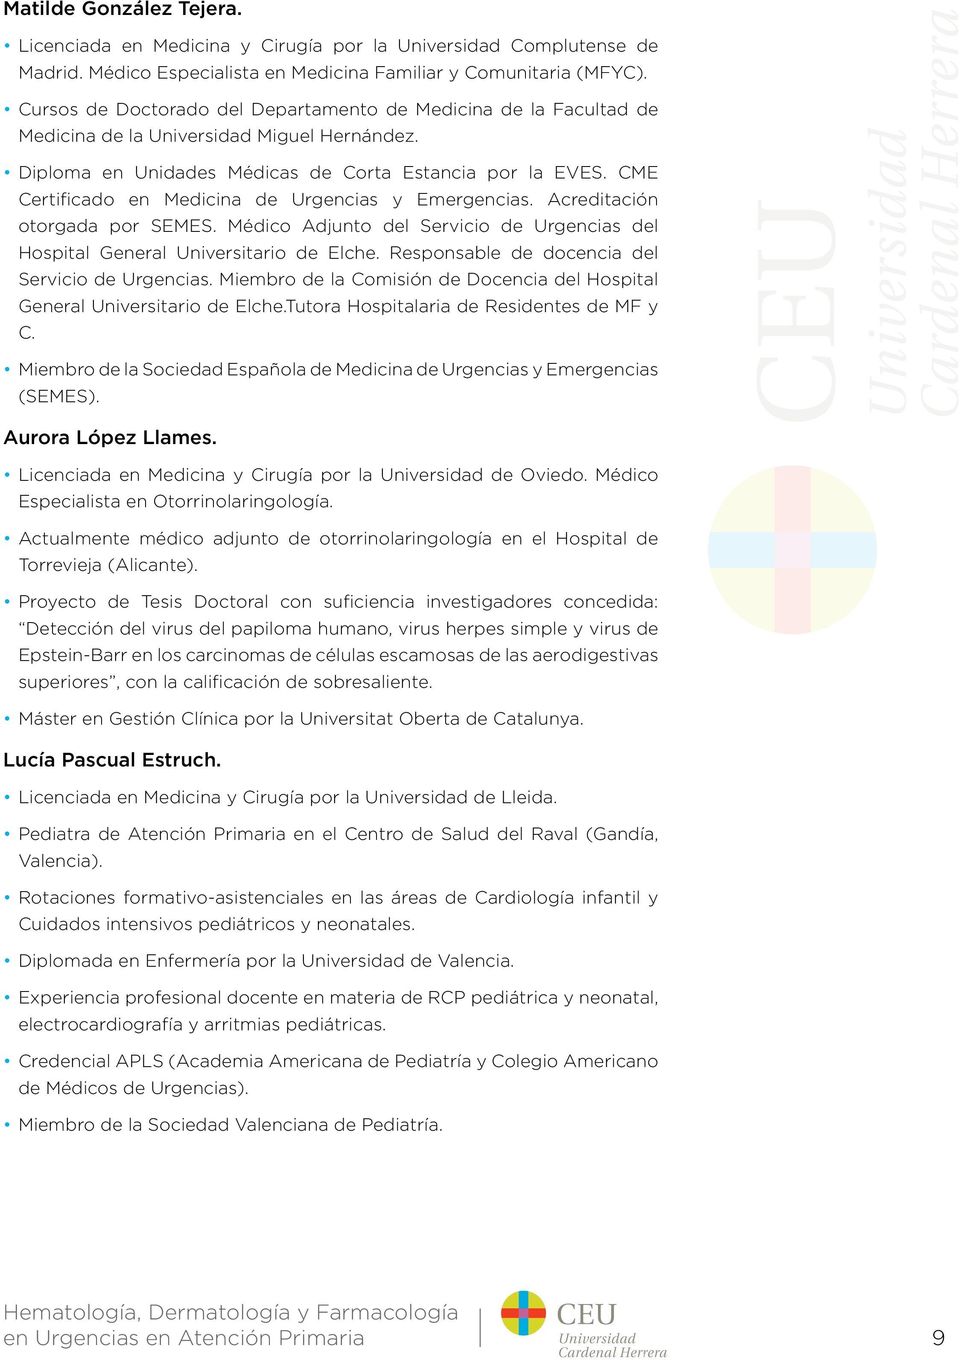 CME Certificado en Medicina de Urgencias y Emergencias. Acreditación otorgada por SEMES. Médico Adjunto del Servicio de Urgencias del Hospital General Universitario de Elche.